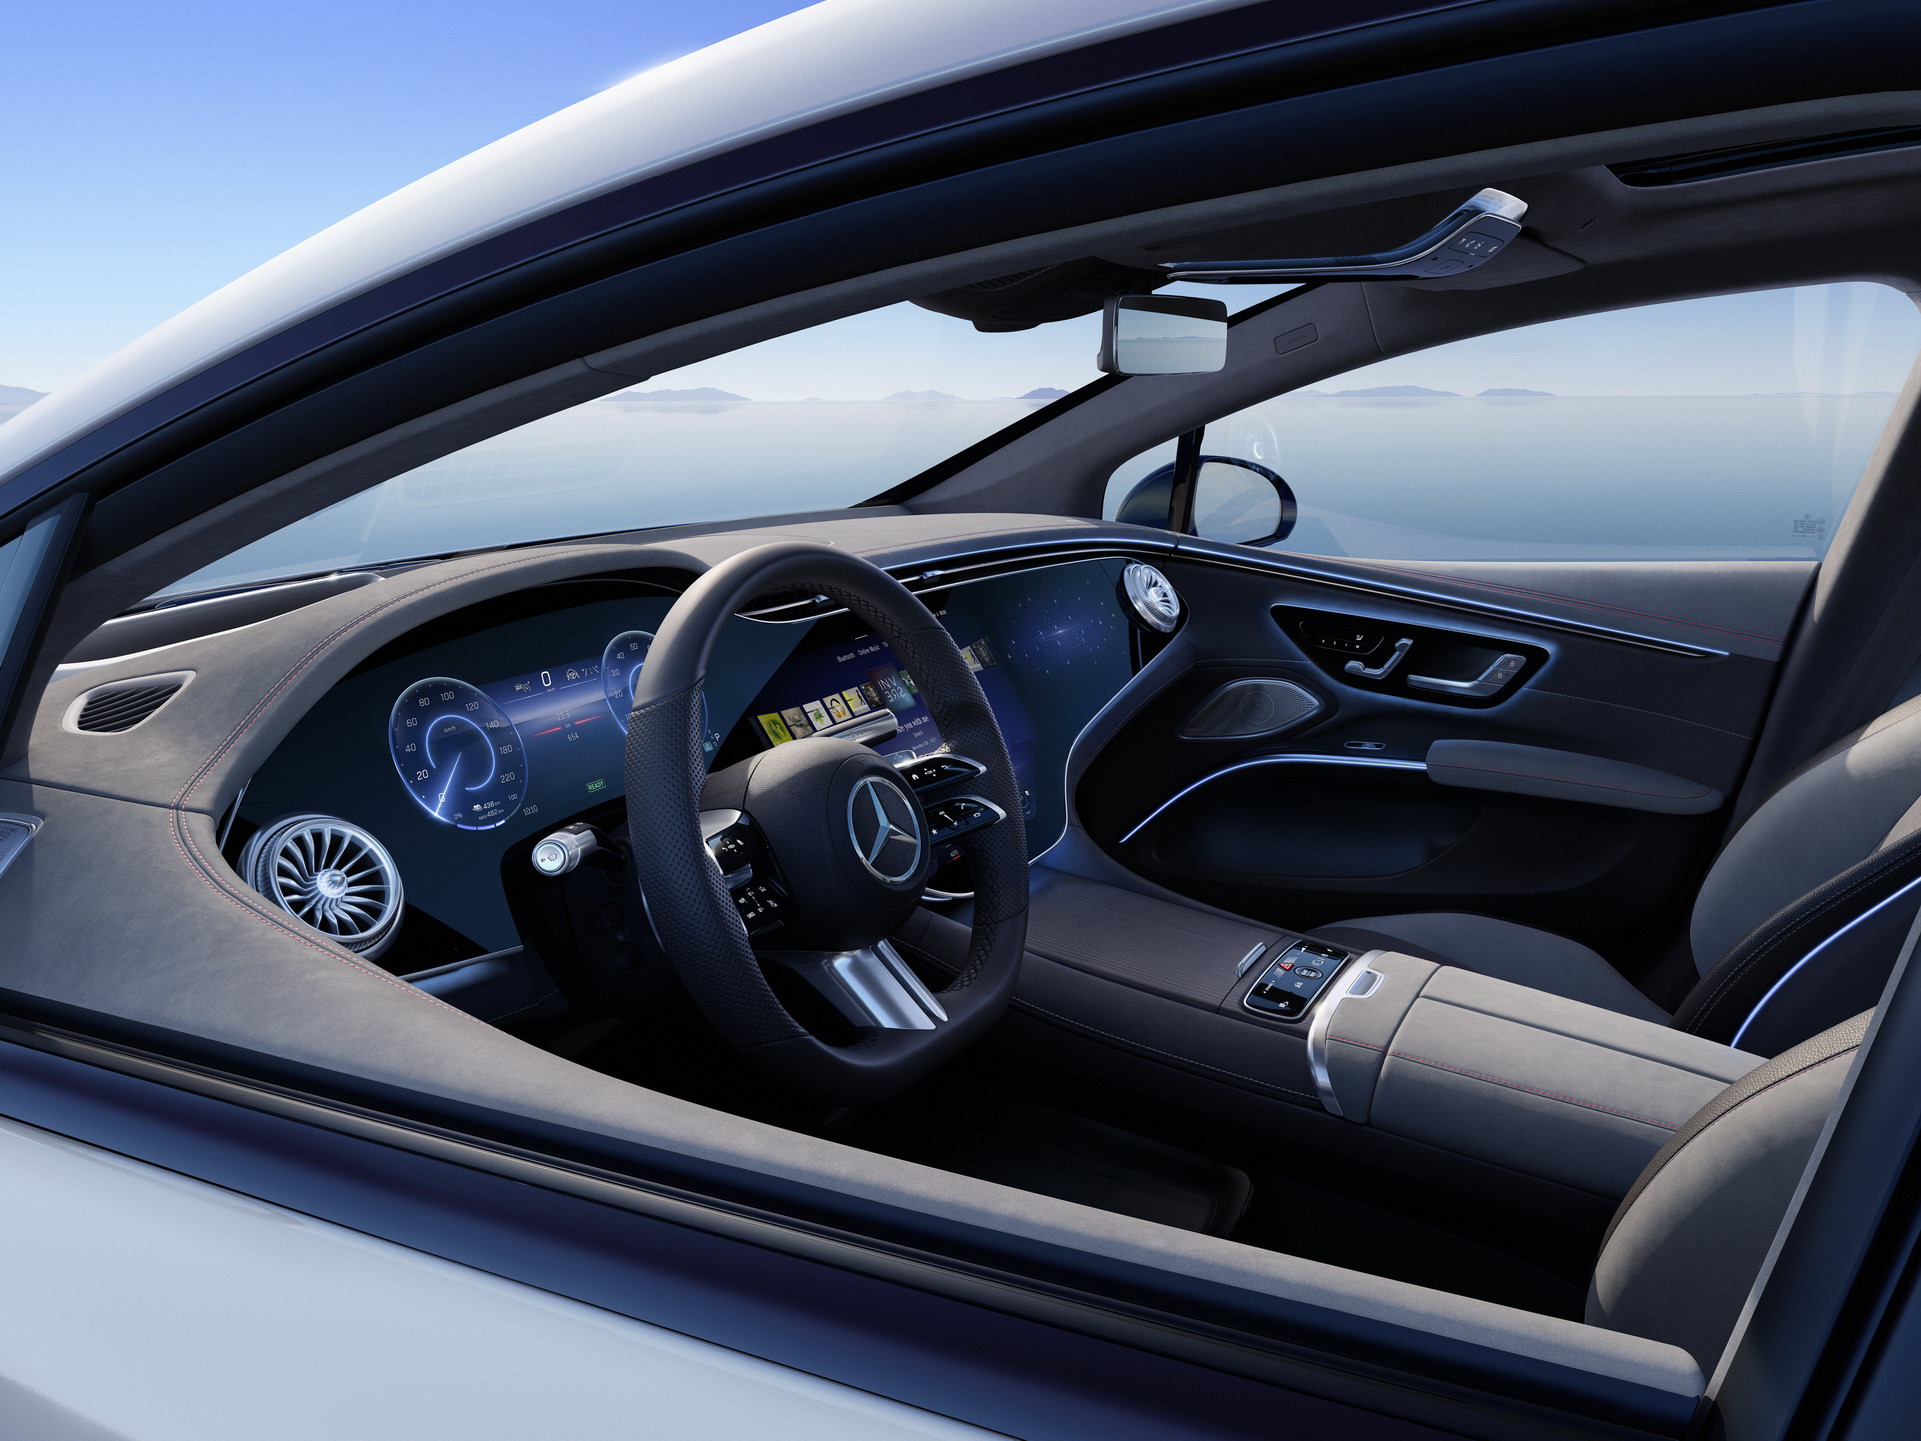 Siêu phẩm xe điện Mercedes-Benz EQS chính thức ra mắt: Tầm hoạt động 770 km, hiện đại như robot - Ảnh 4.